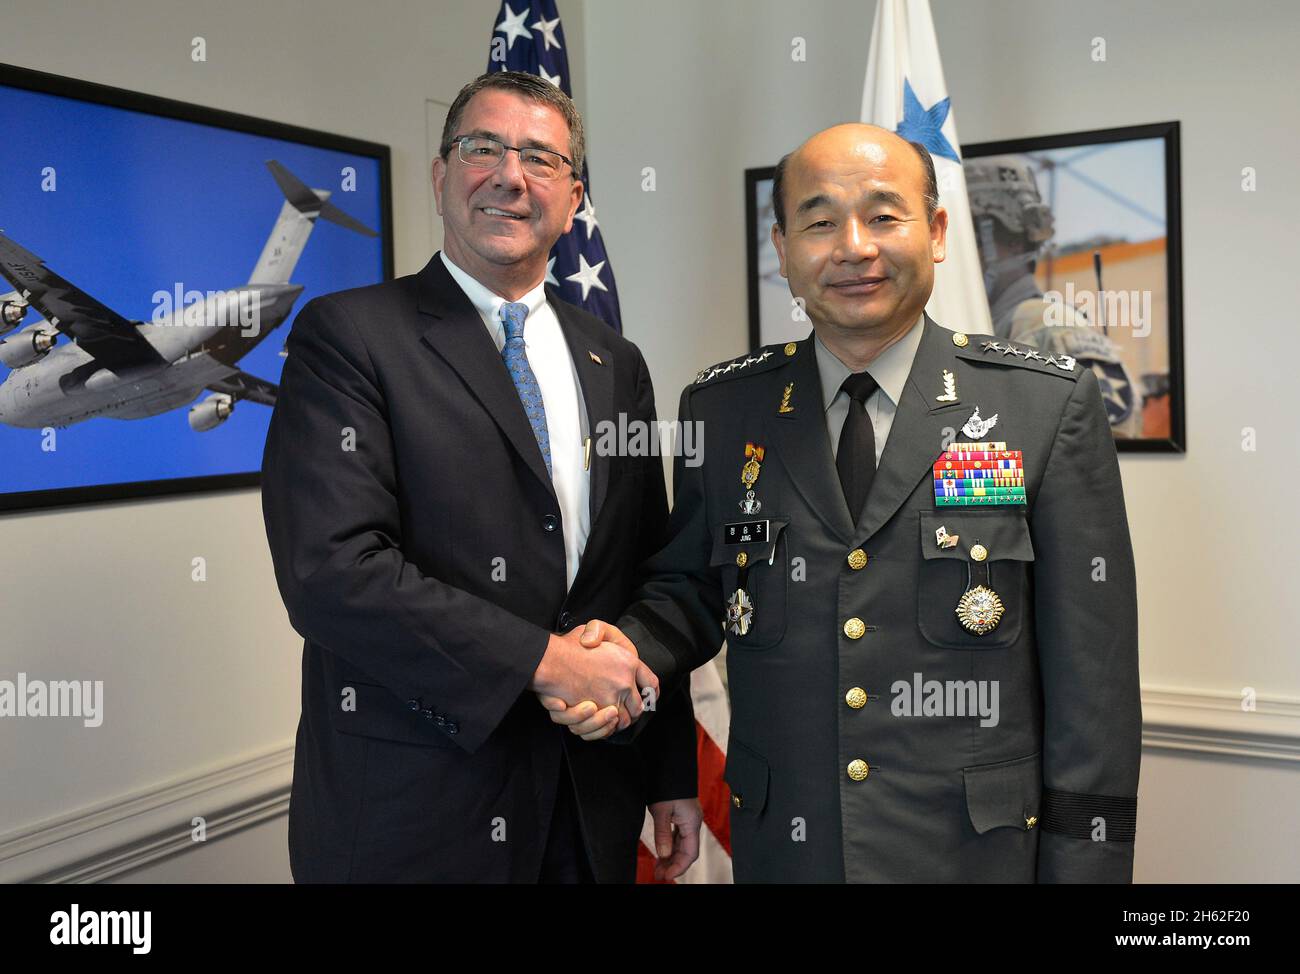 Le secrétaire adjoint à la Défense Ashton B. carter rencontre le président général des chefs d'état-major interarmées de la Corée du Sud, Jung Seung-jo, au Pentagone, le 26 juillet 2013 Banque D'Images